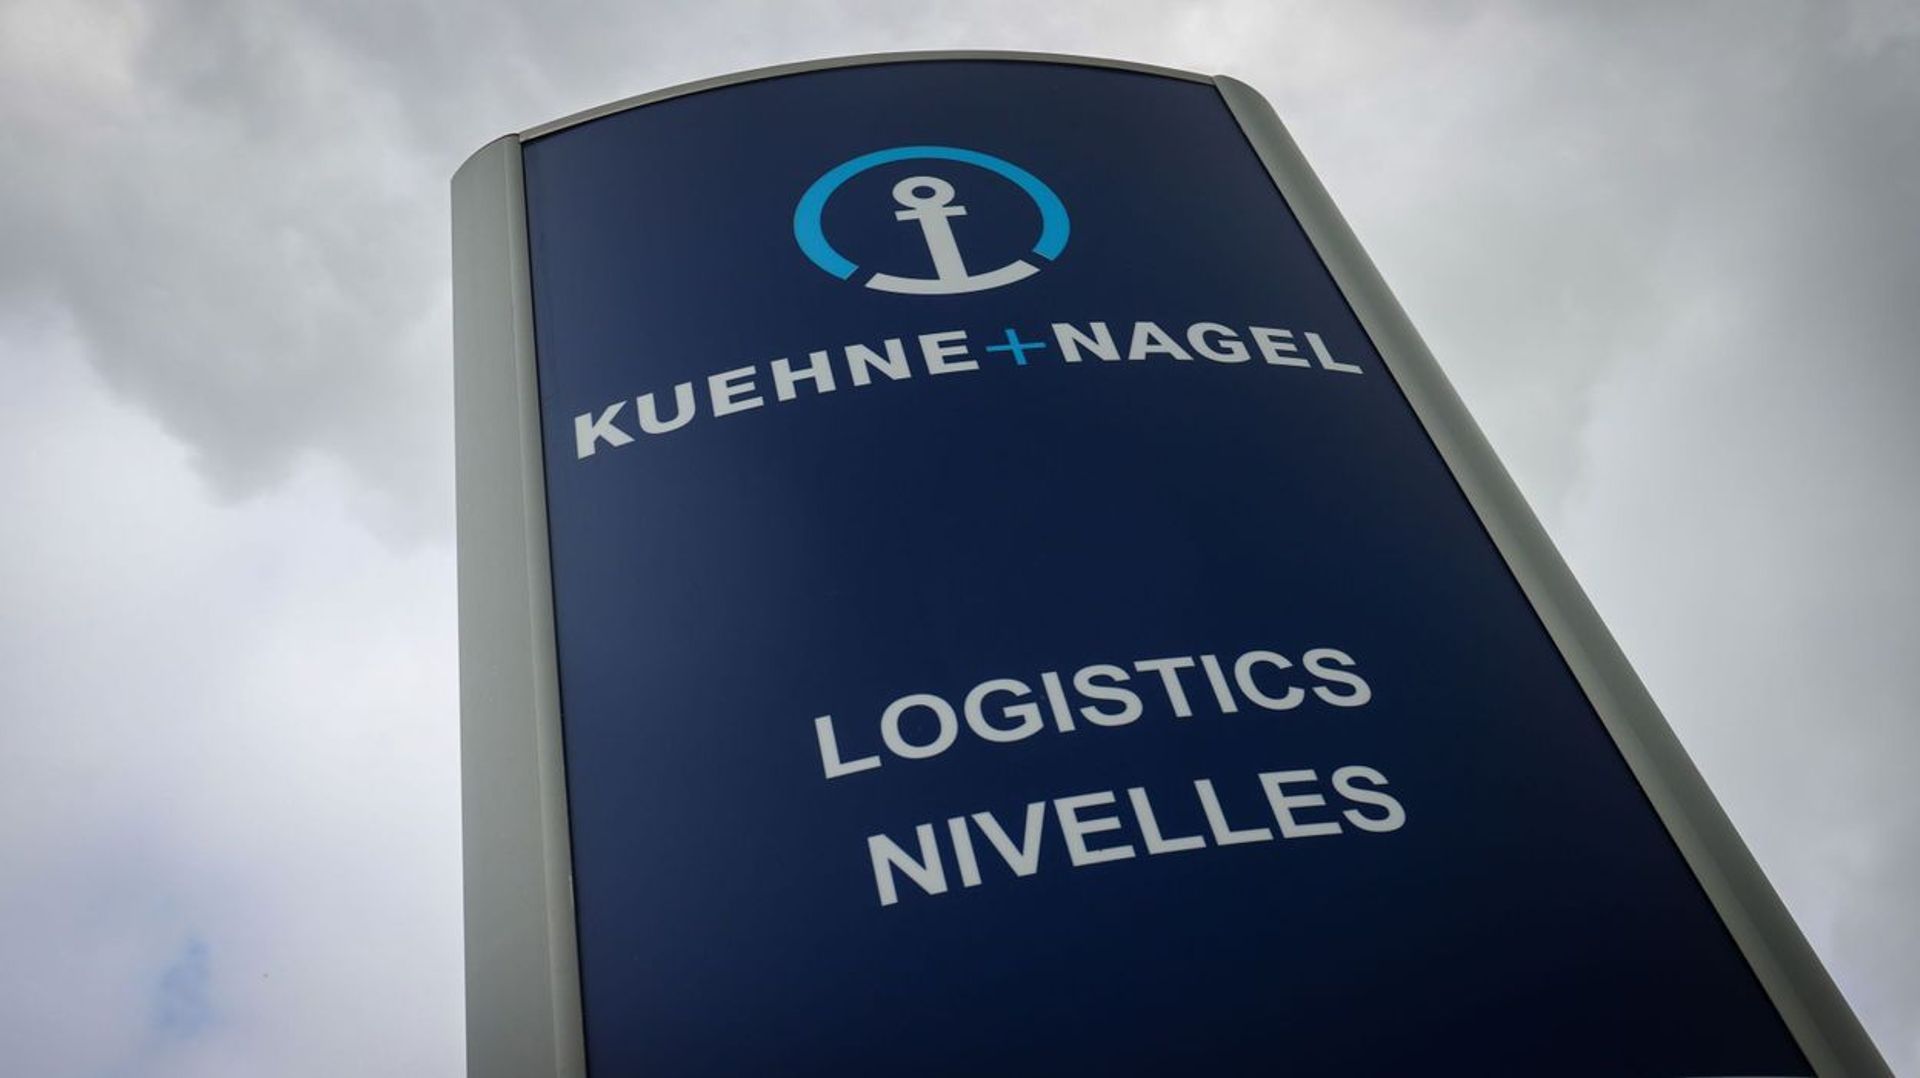 C’est confirmé ! La direction du groupe Kuehne + Nagel a forcé le passage vers la phase 2 du plan Renault, malgré la contestation collective des syndicats. Le personnel doit être informé ce vendredi.